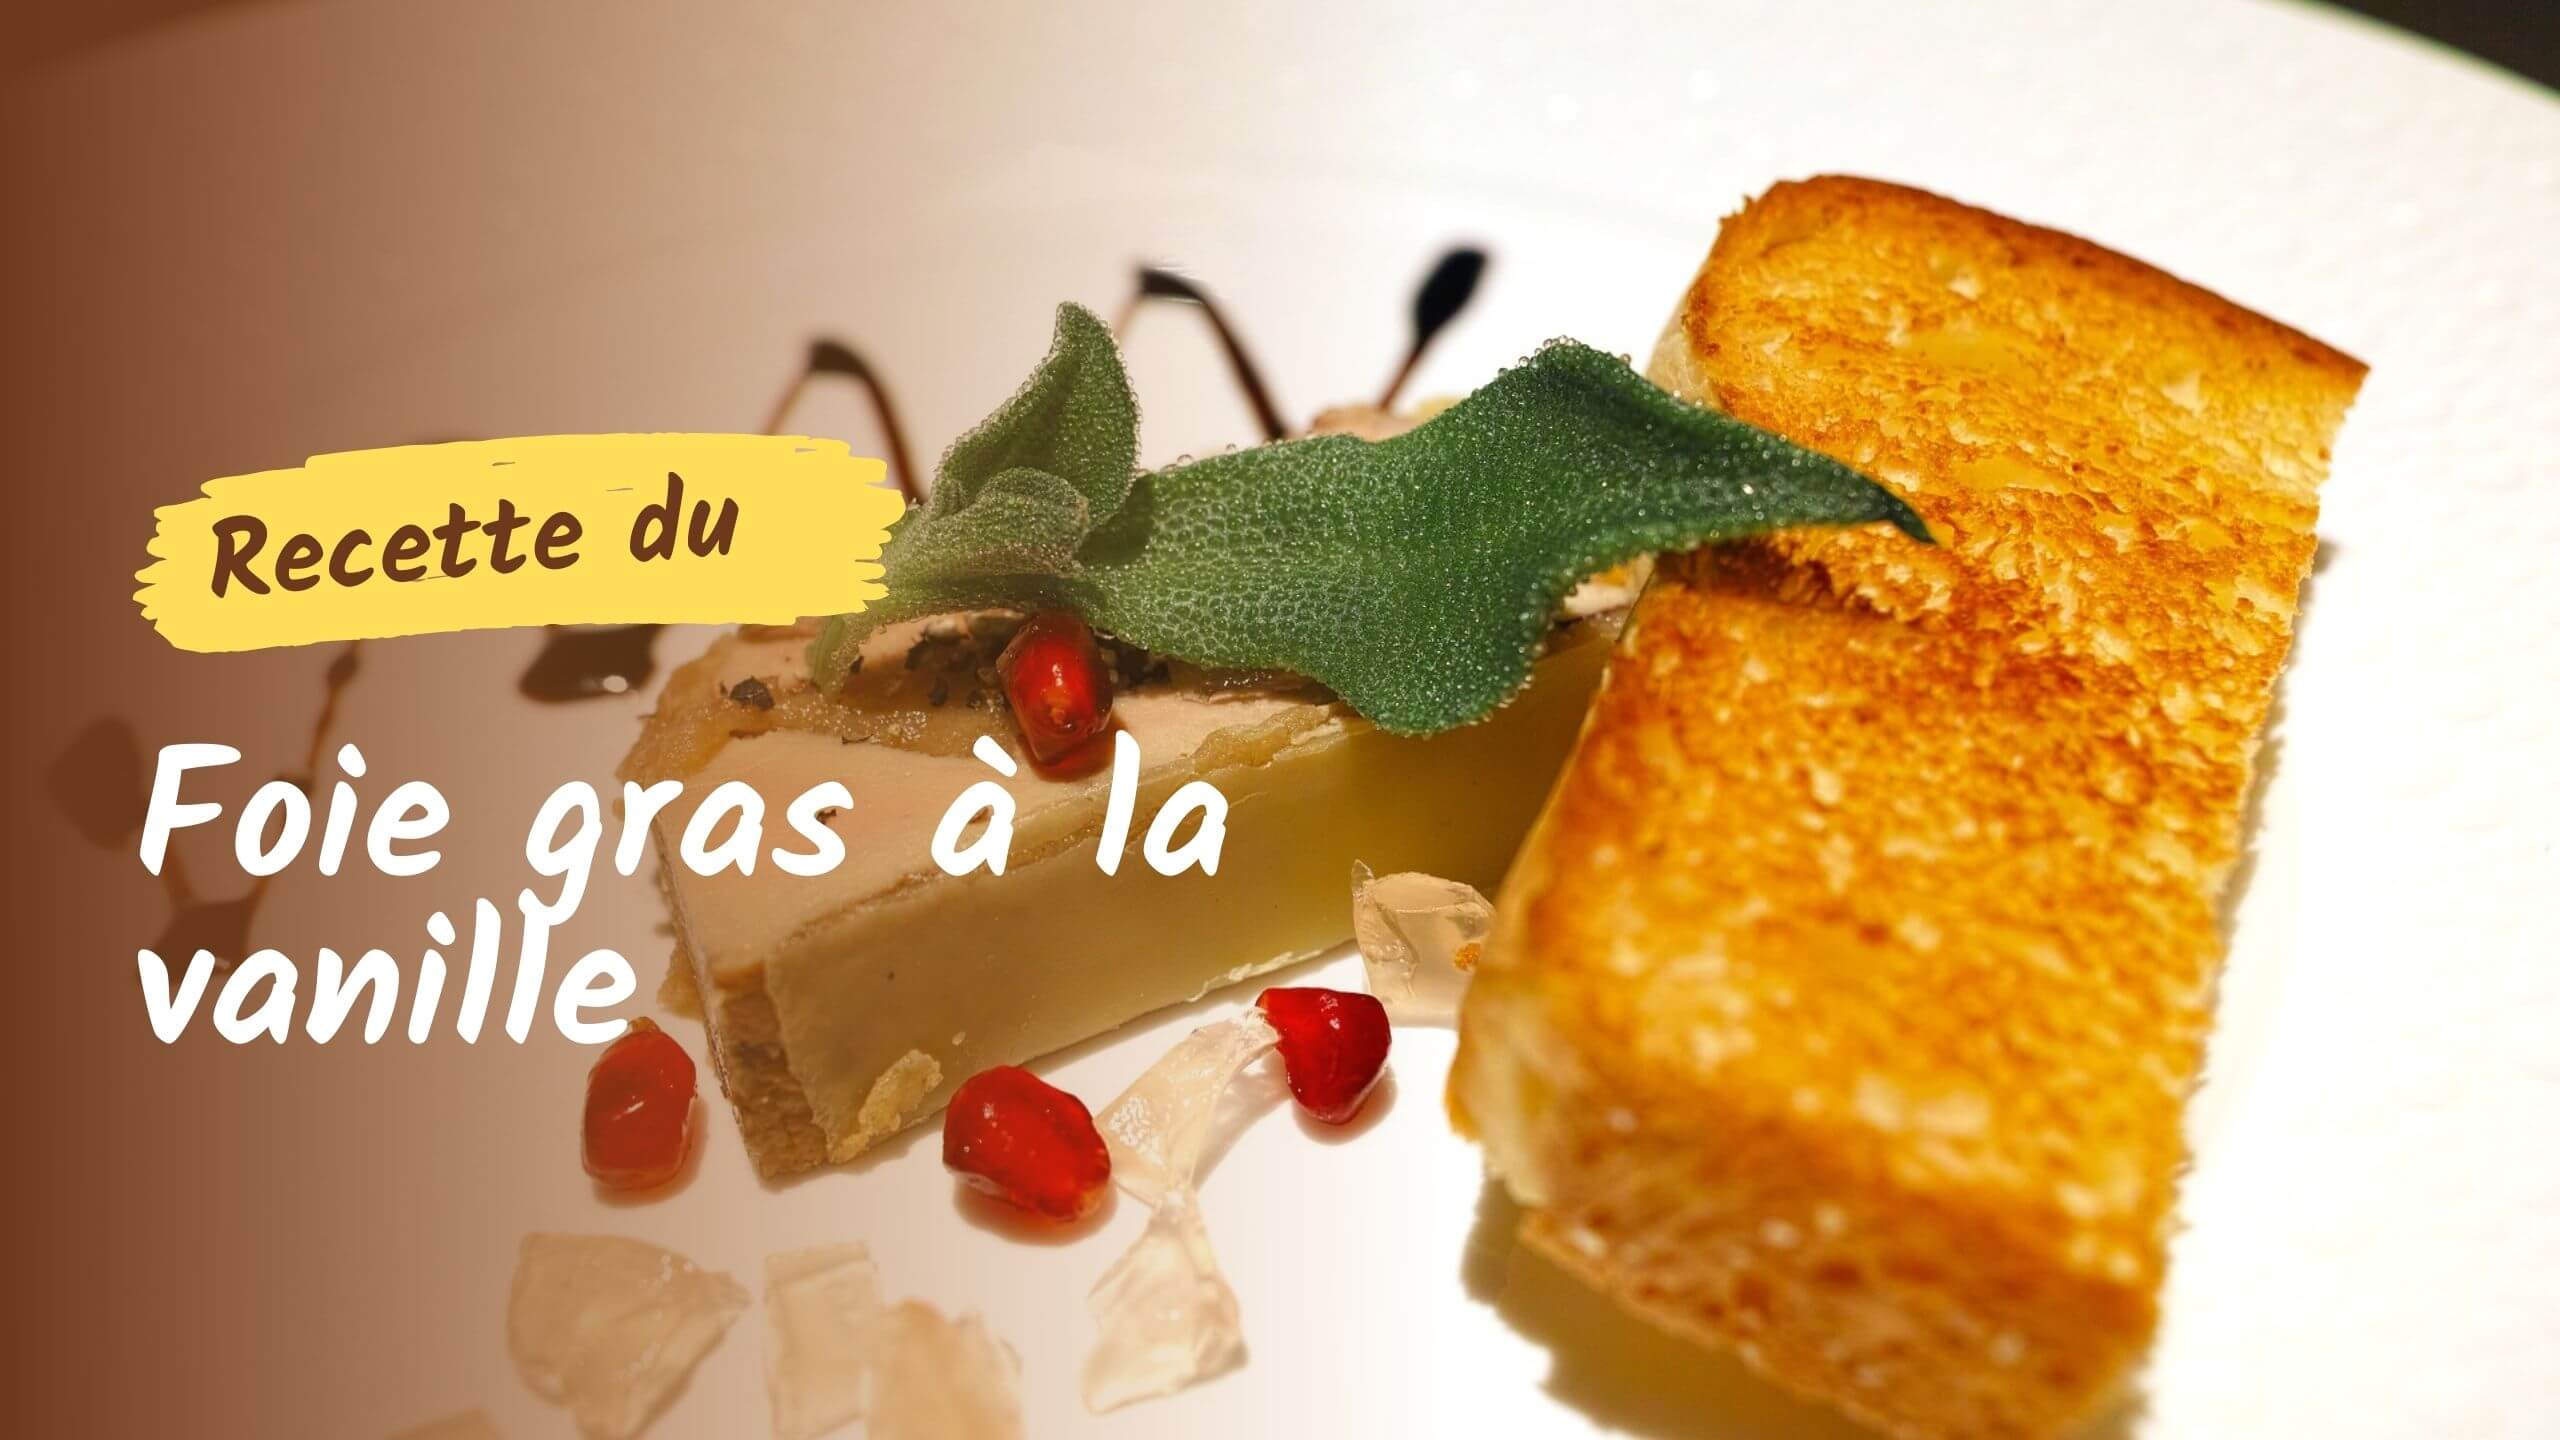 Recette du foie gras à la vanille